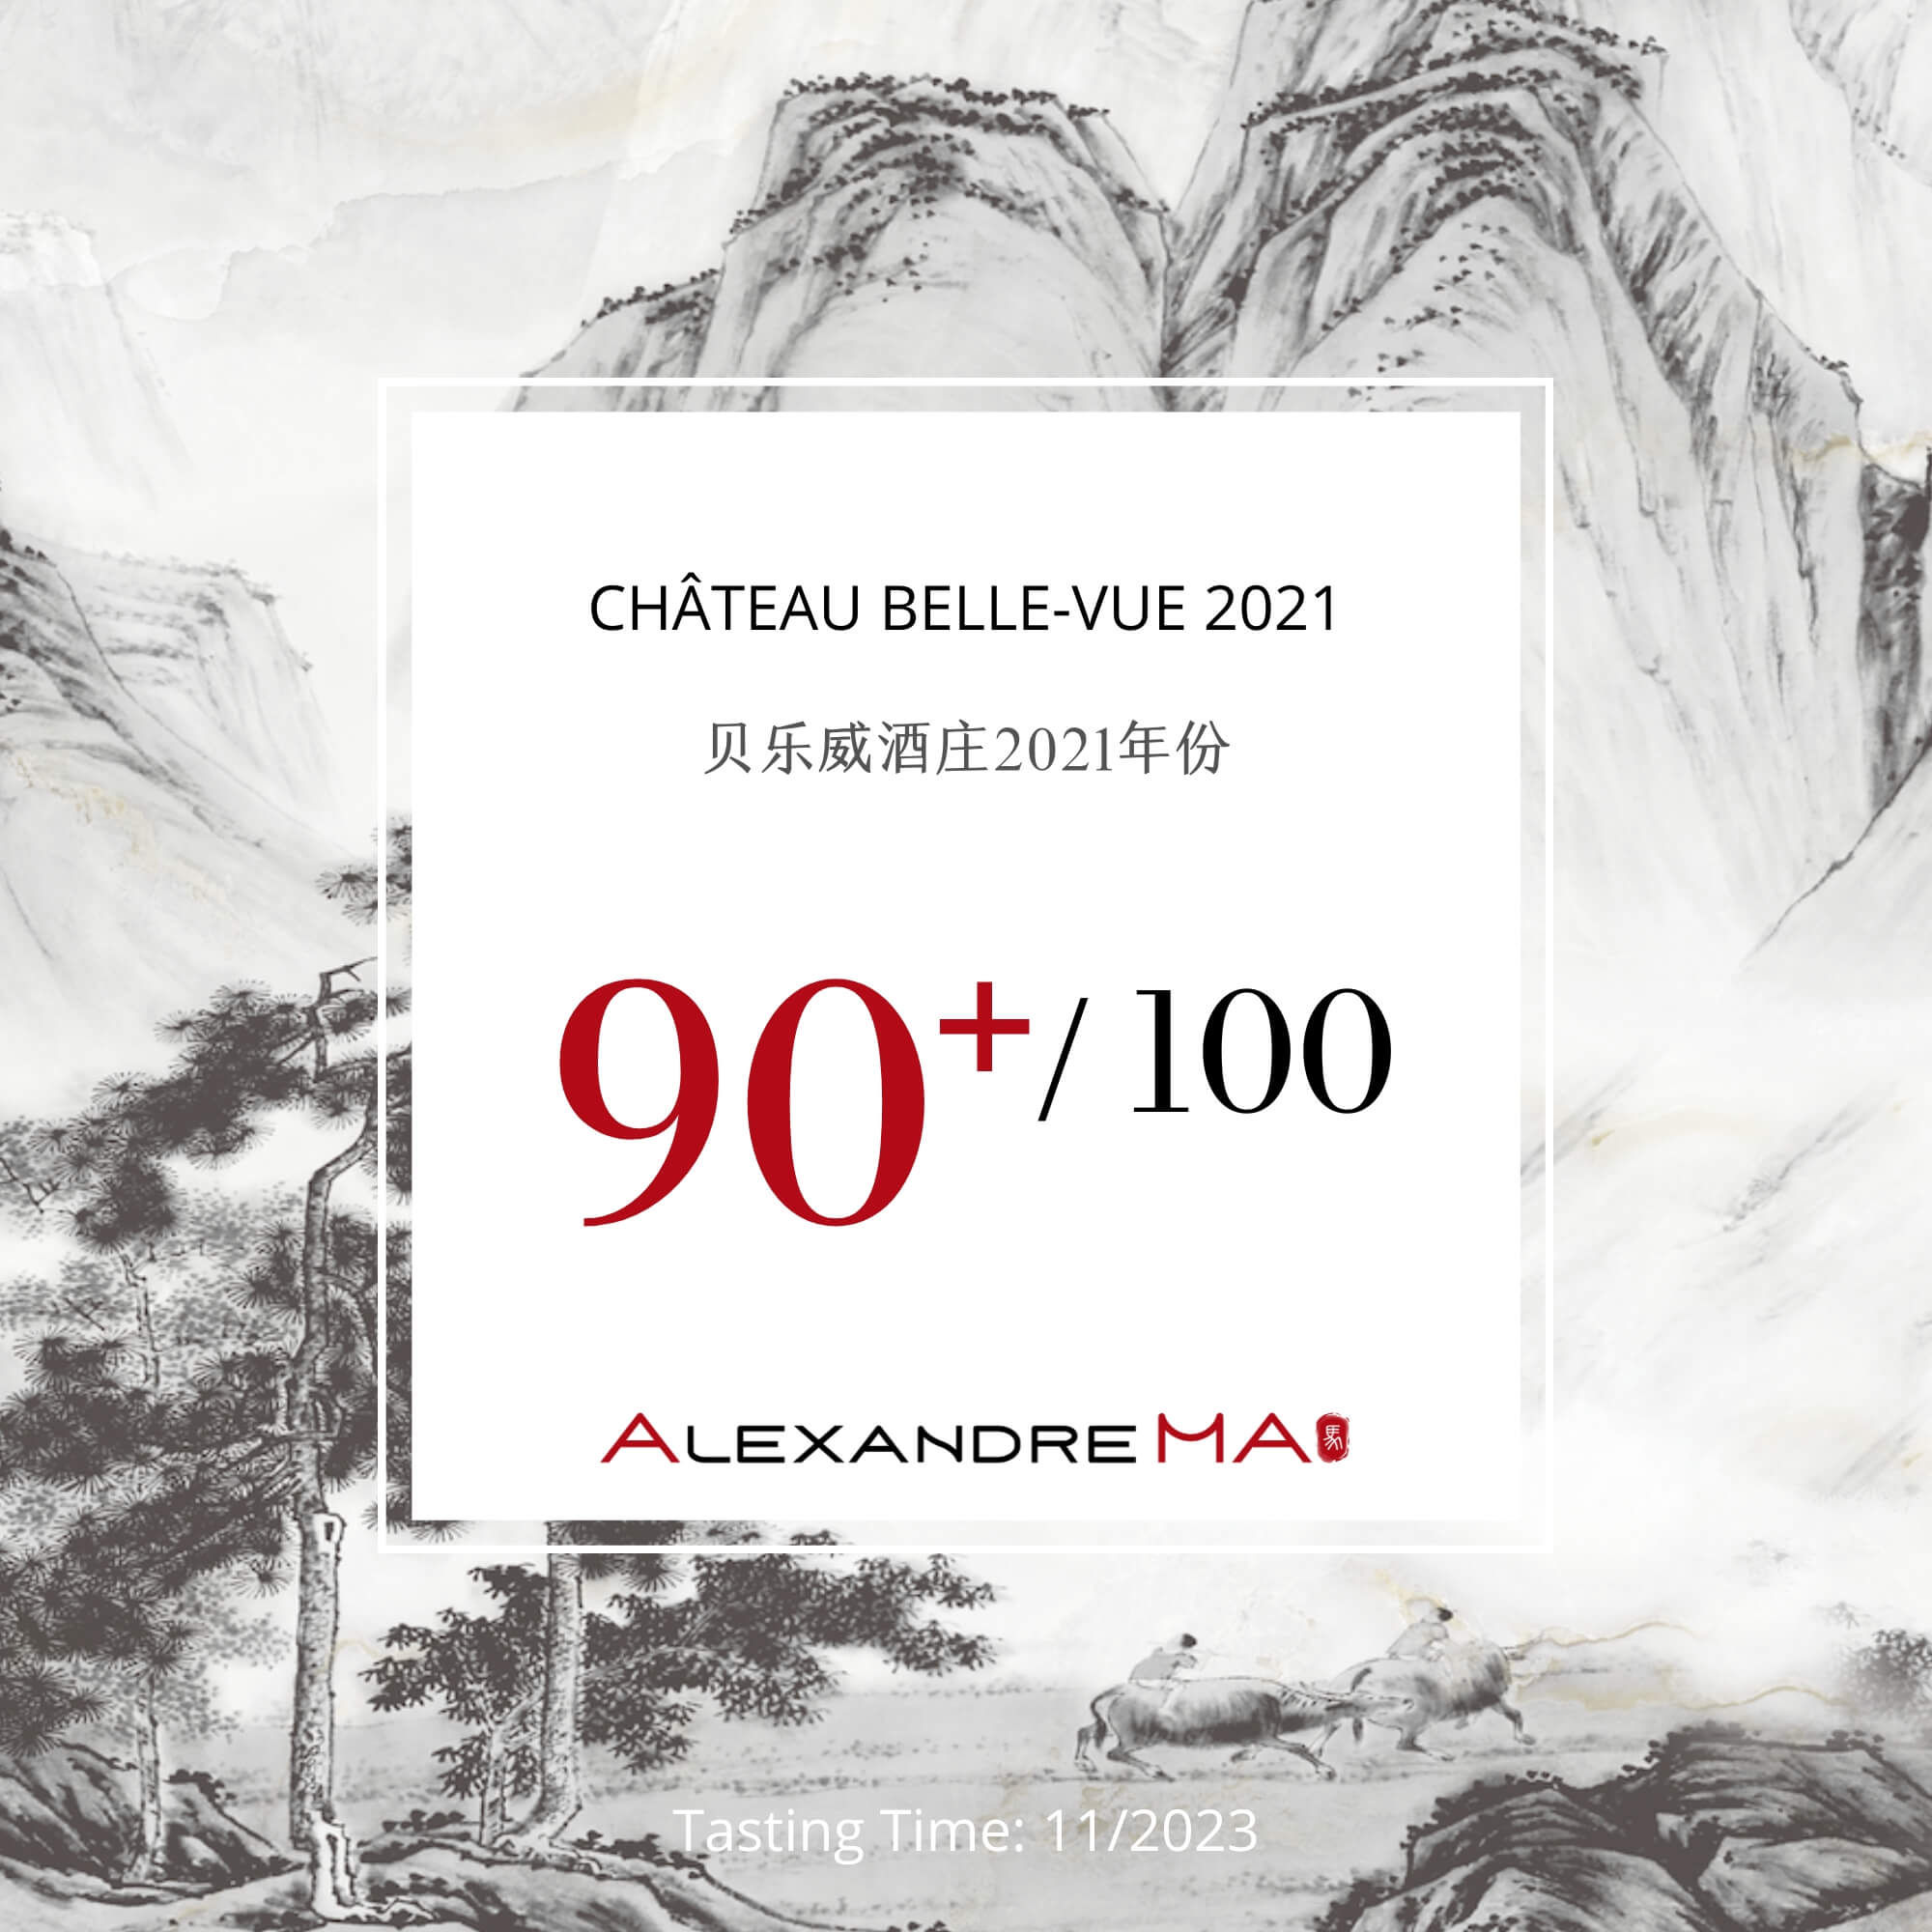 Château Belle-Vue 2021 - Alexandre MA